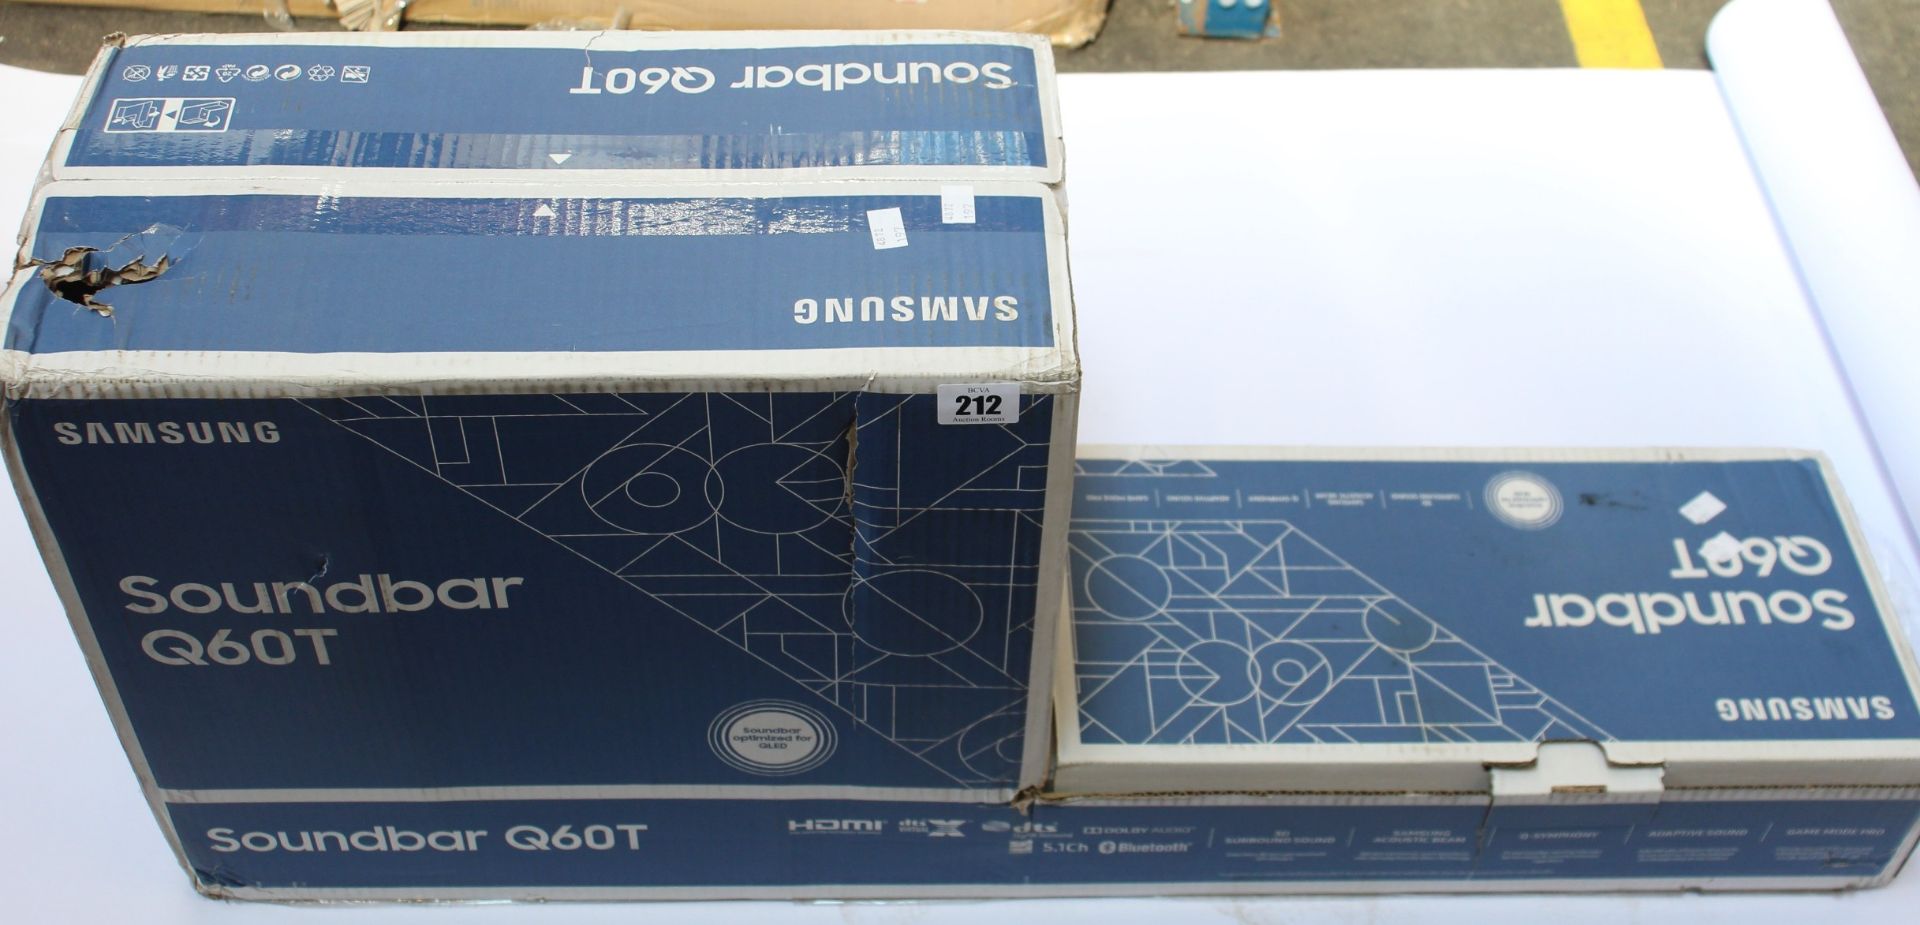 A boxed Samsung Soundbar Q60T.